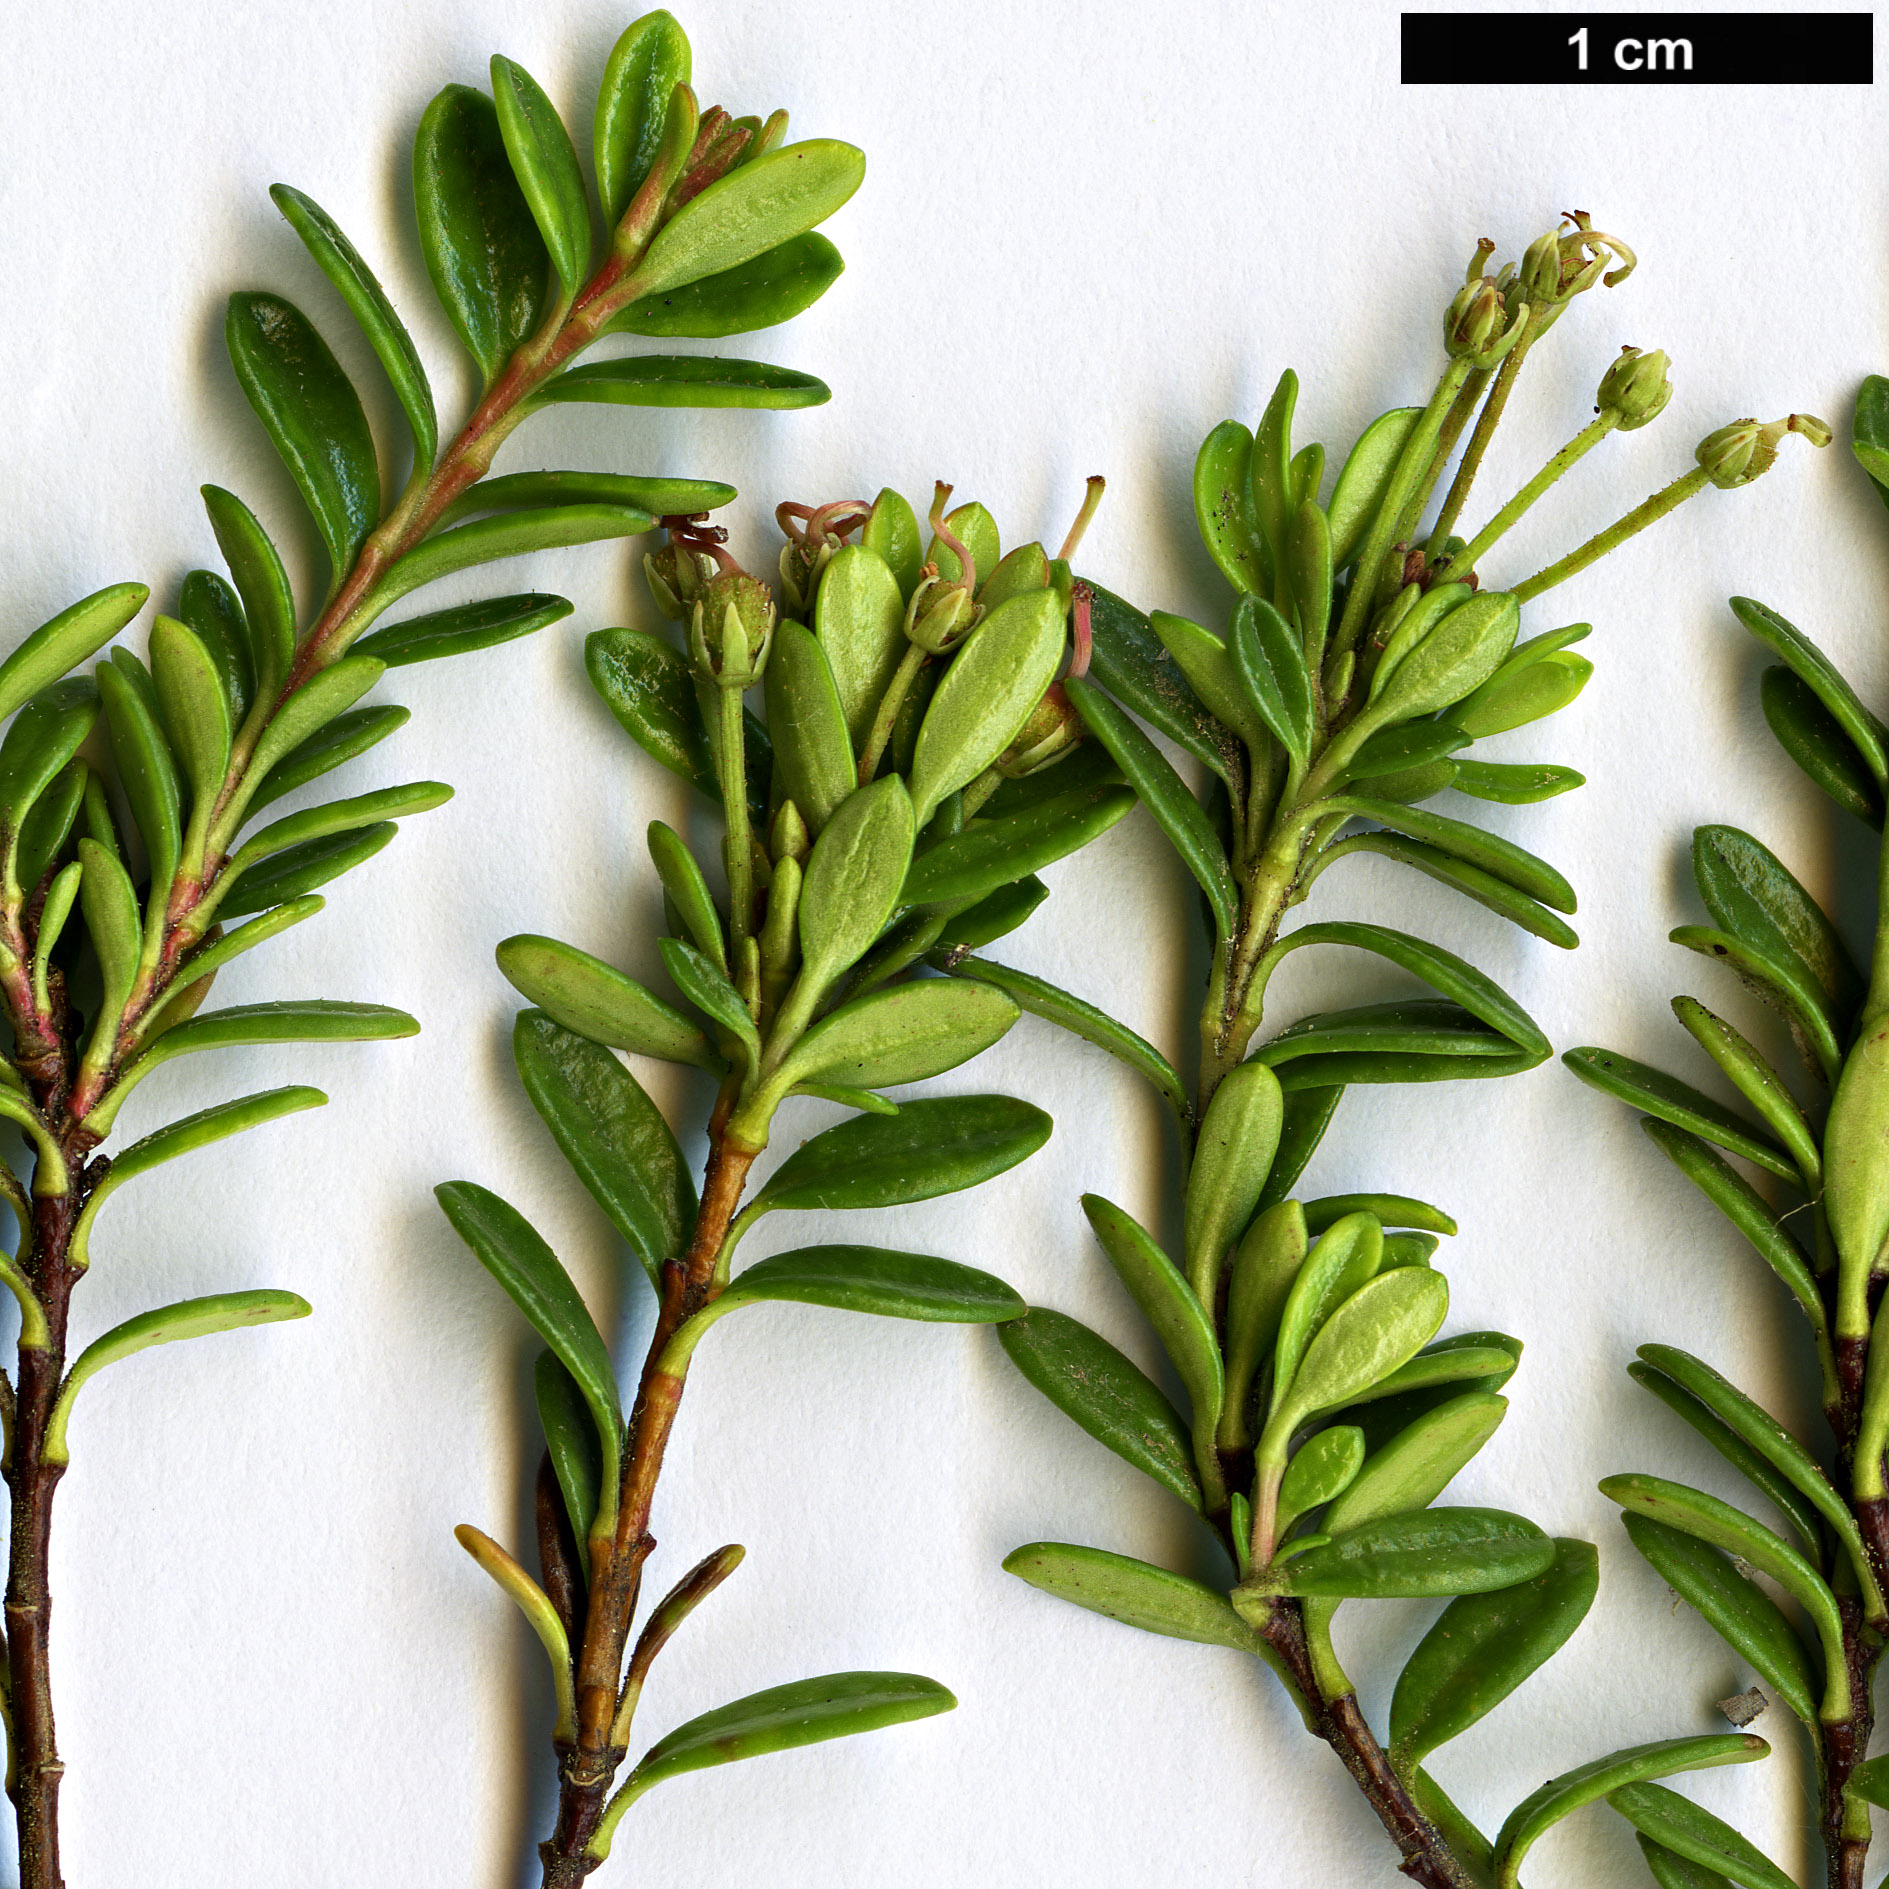 High resolution image: Family: Ericaceae - Genus: Kalmia - Taxon: buxifolia